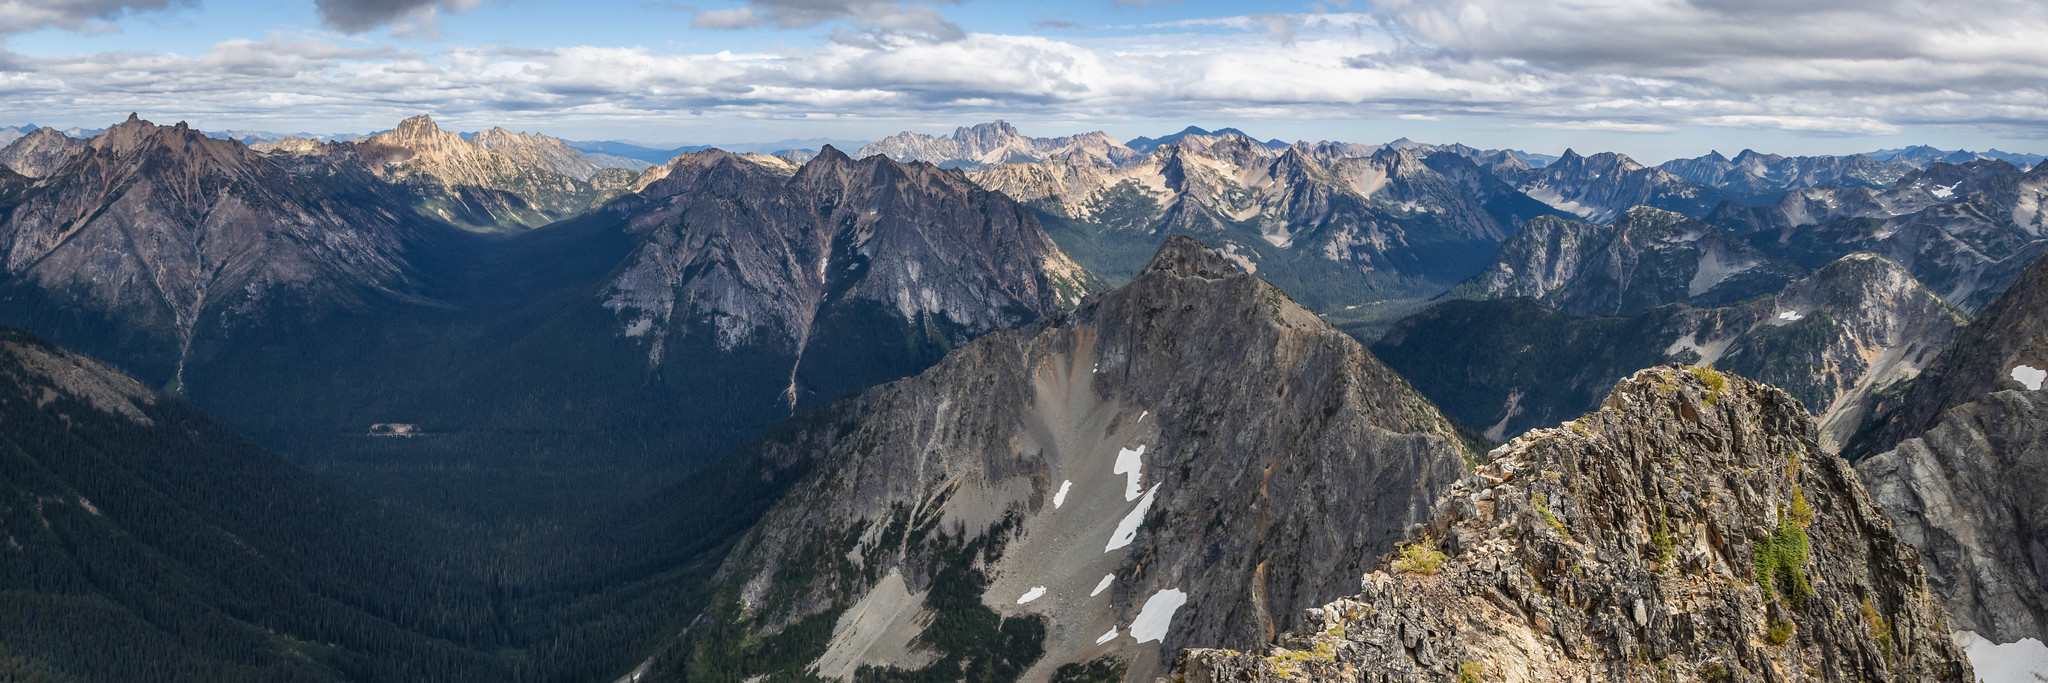 West panorama from Repulse Peak